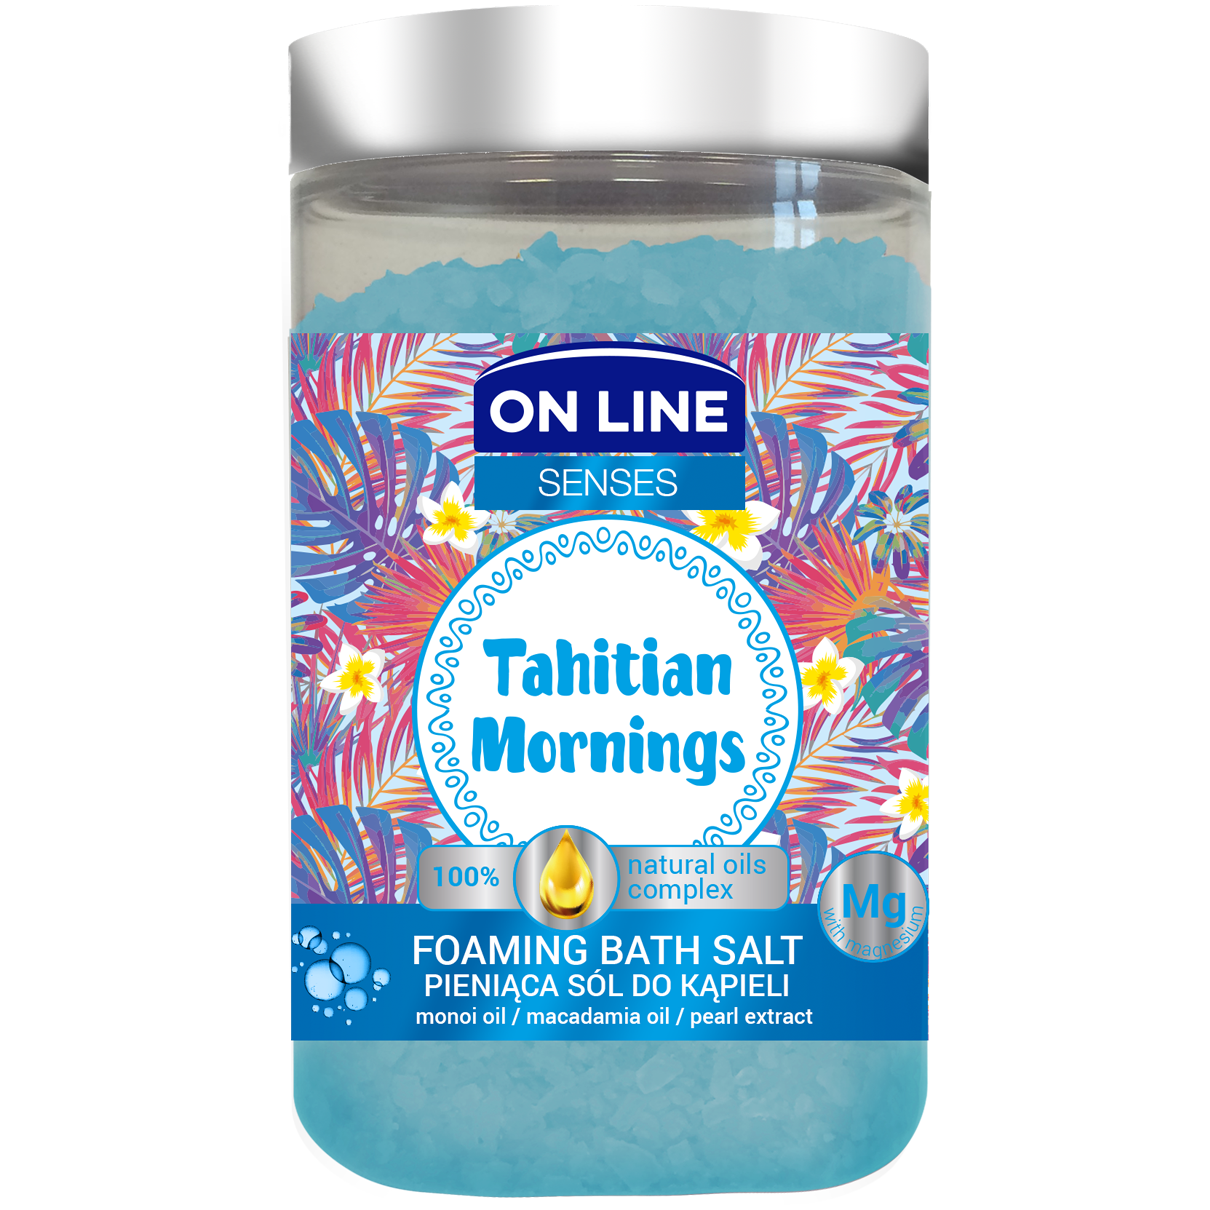 On Line Senses Tahitian пенящаяся соль для ванн, 480 г